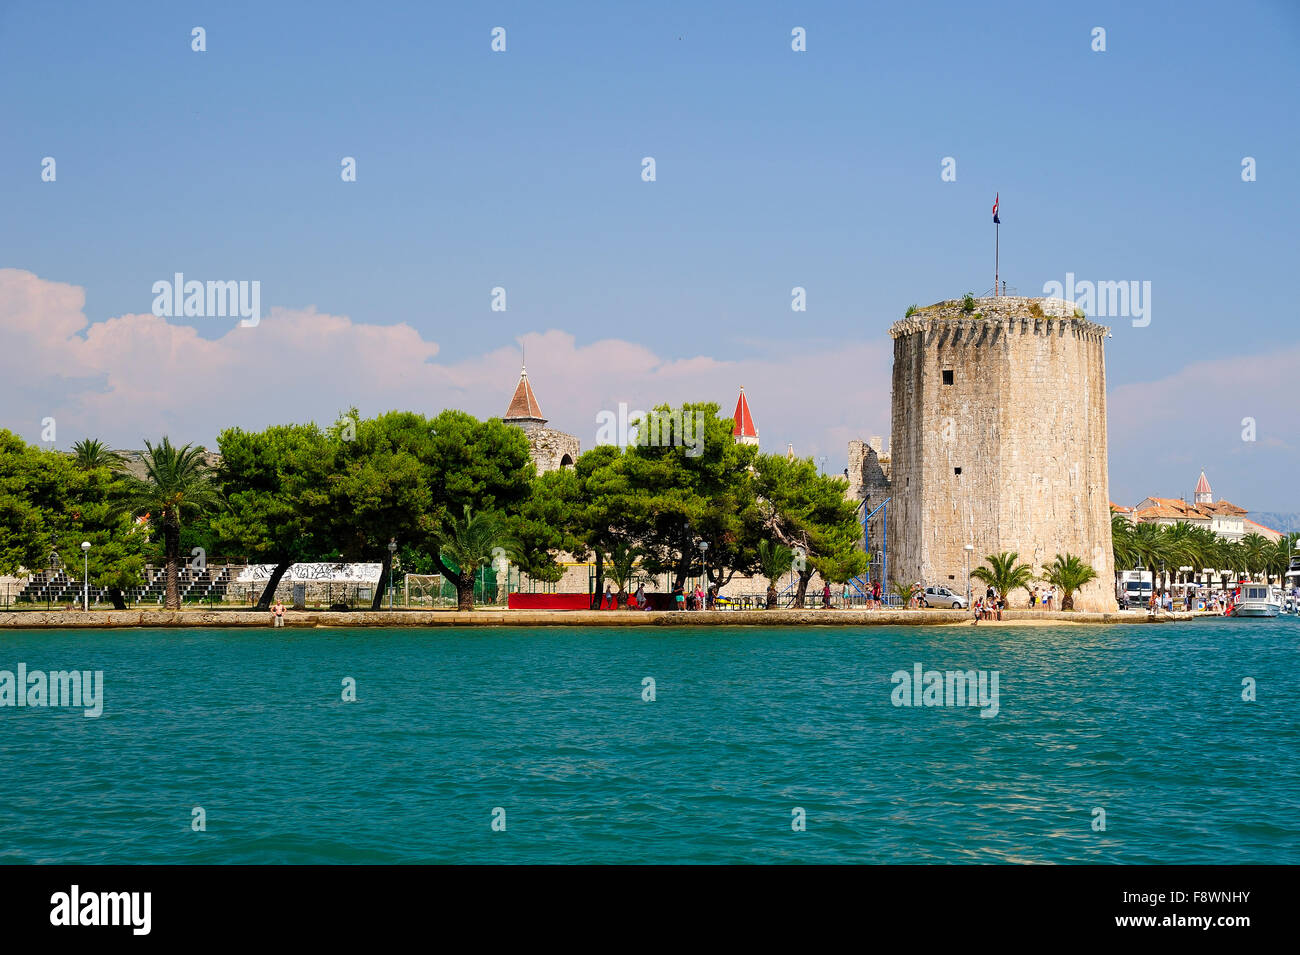 Kamerlengo Fortress, Trogir, Dalmatia, Croatia Stock Photo